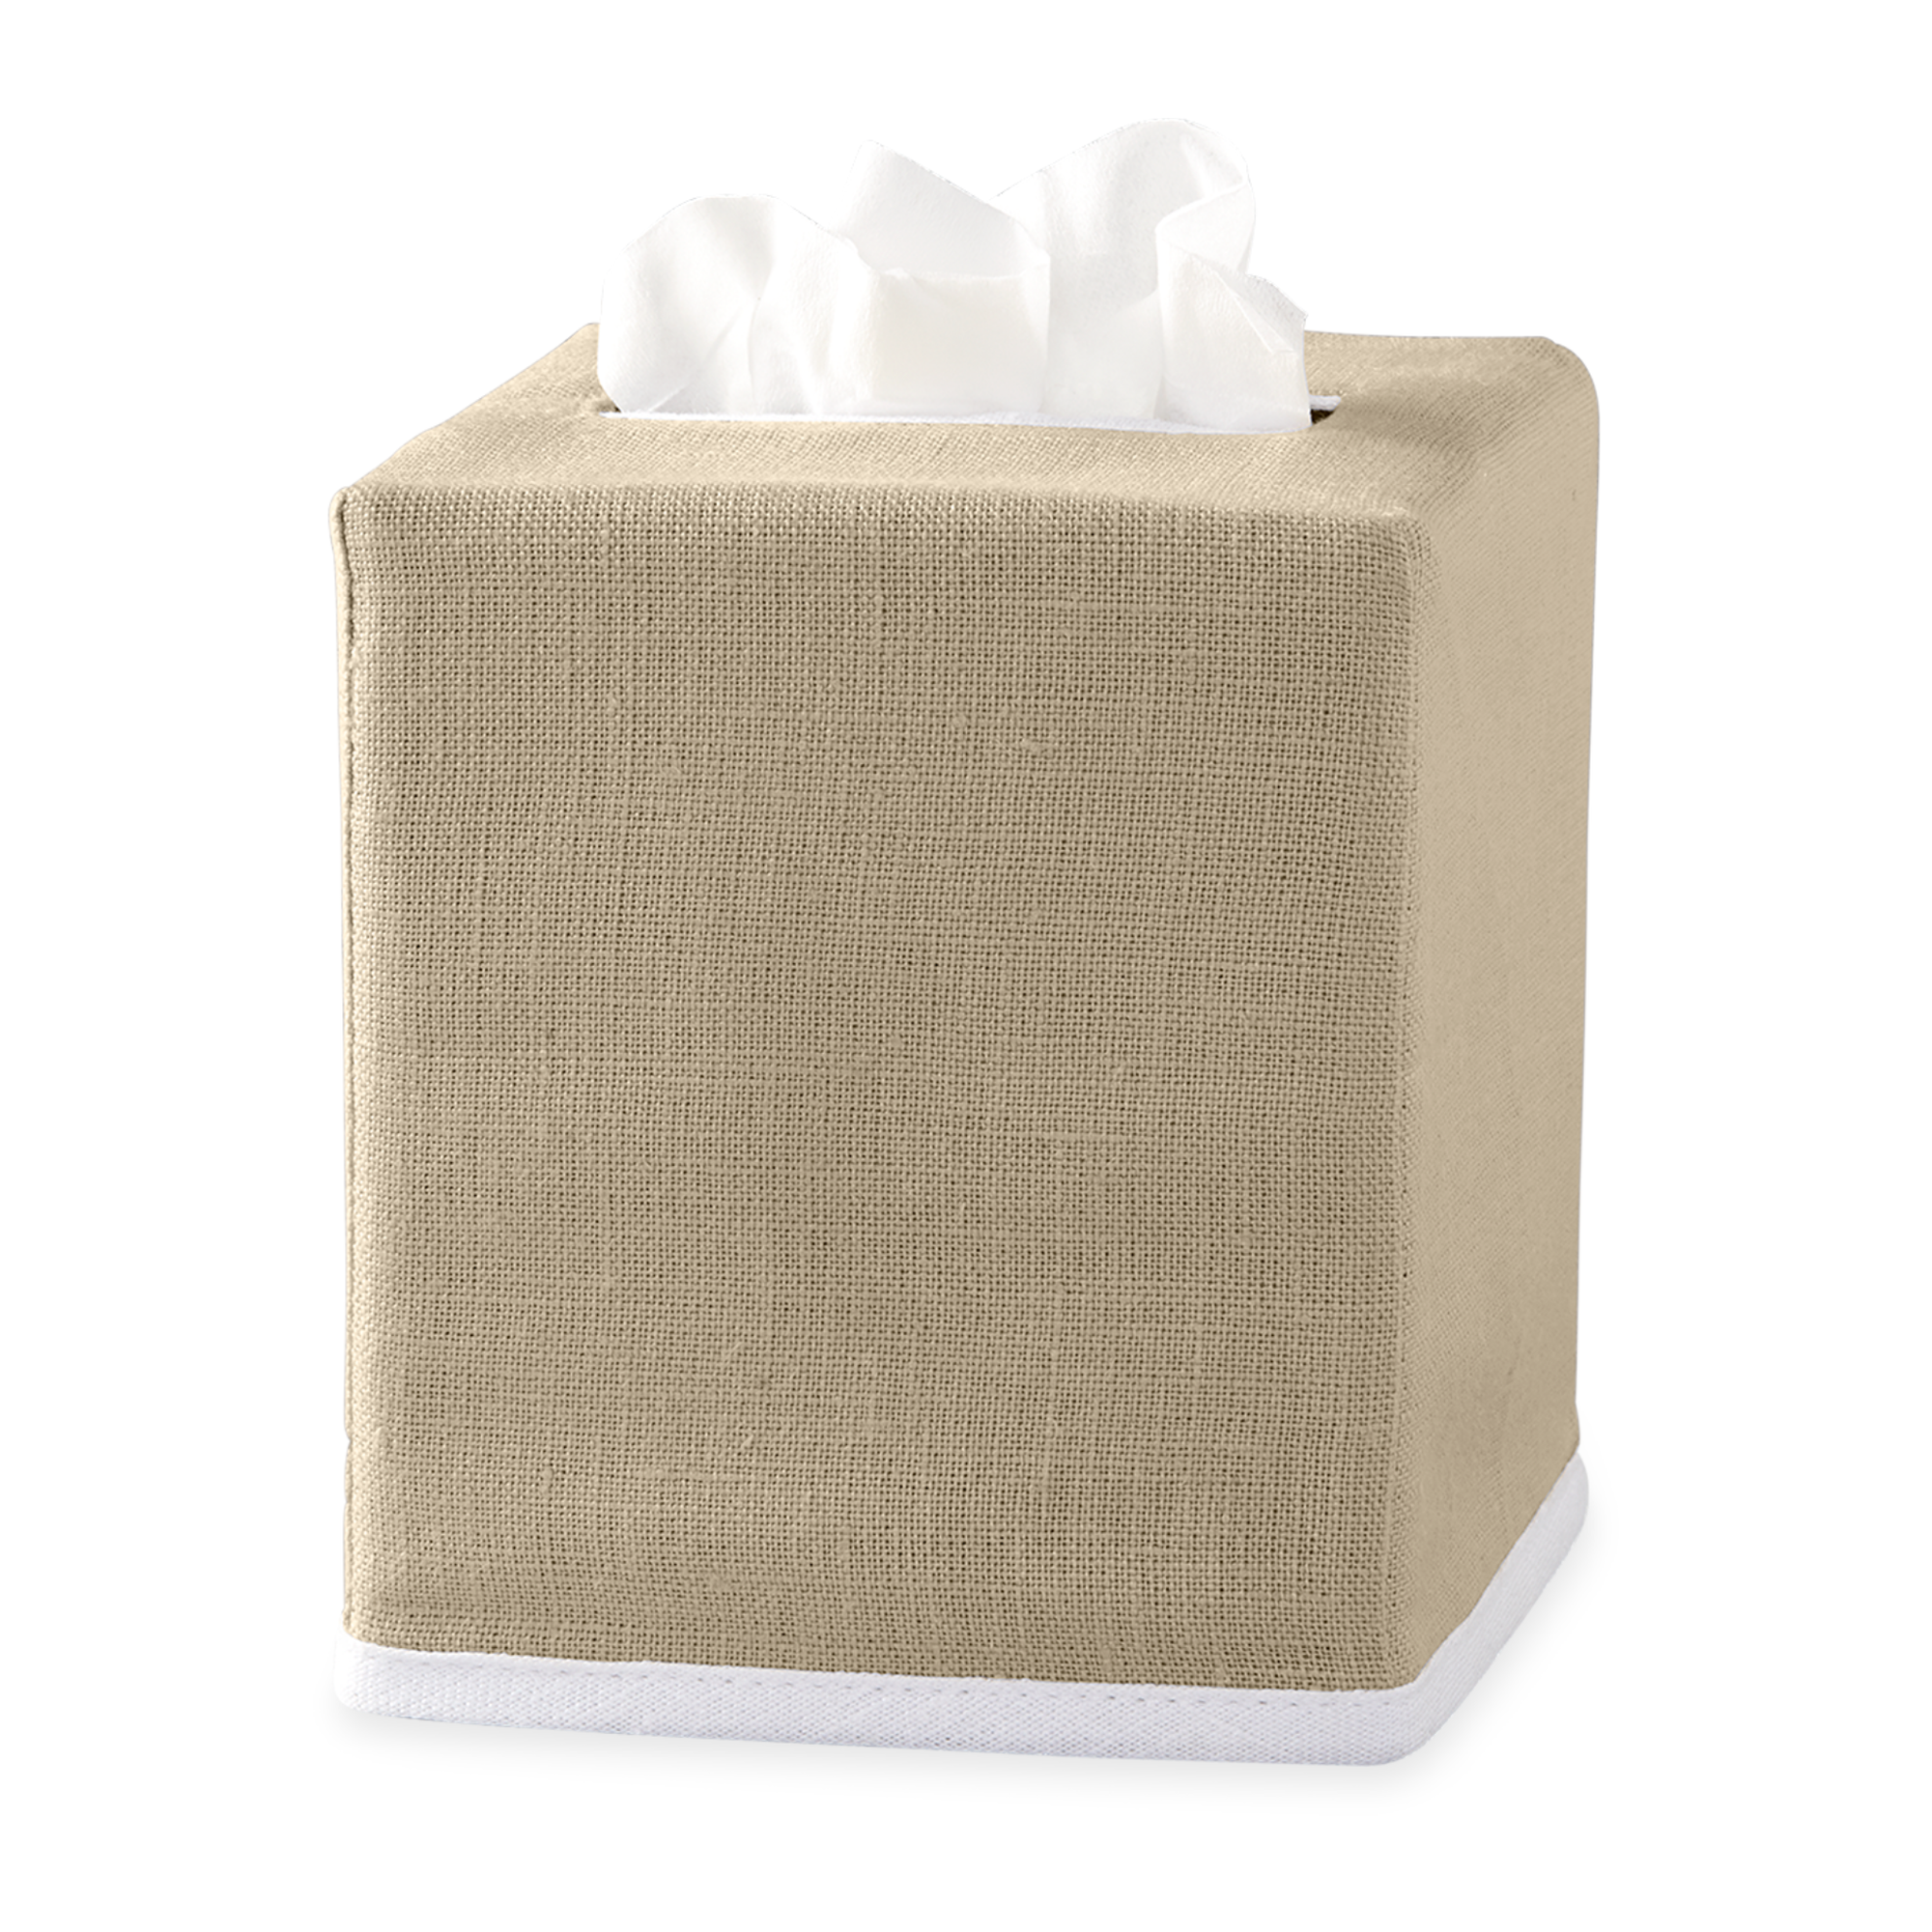 Oat Matouk Chelsea Linen Tissue Box Cover Against White Background